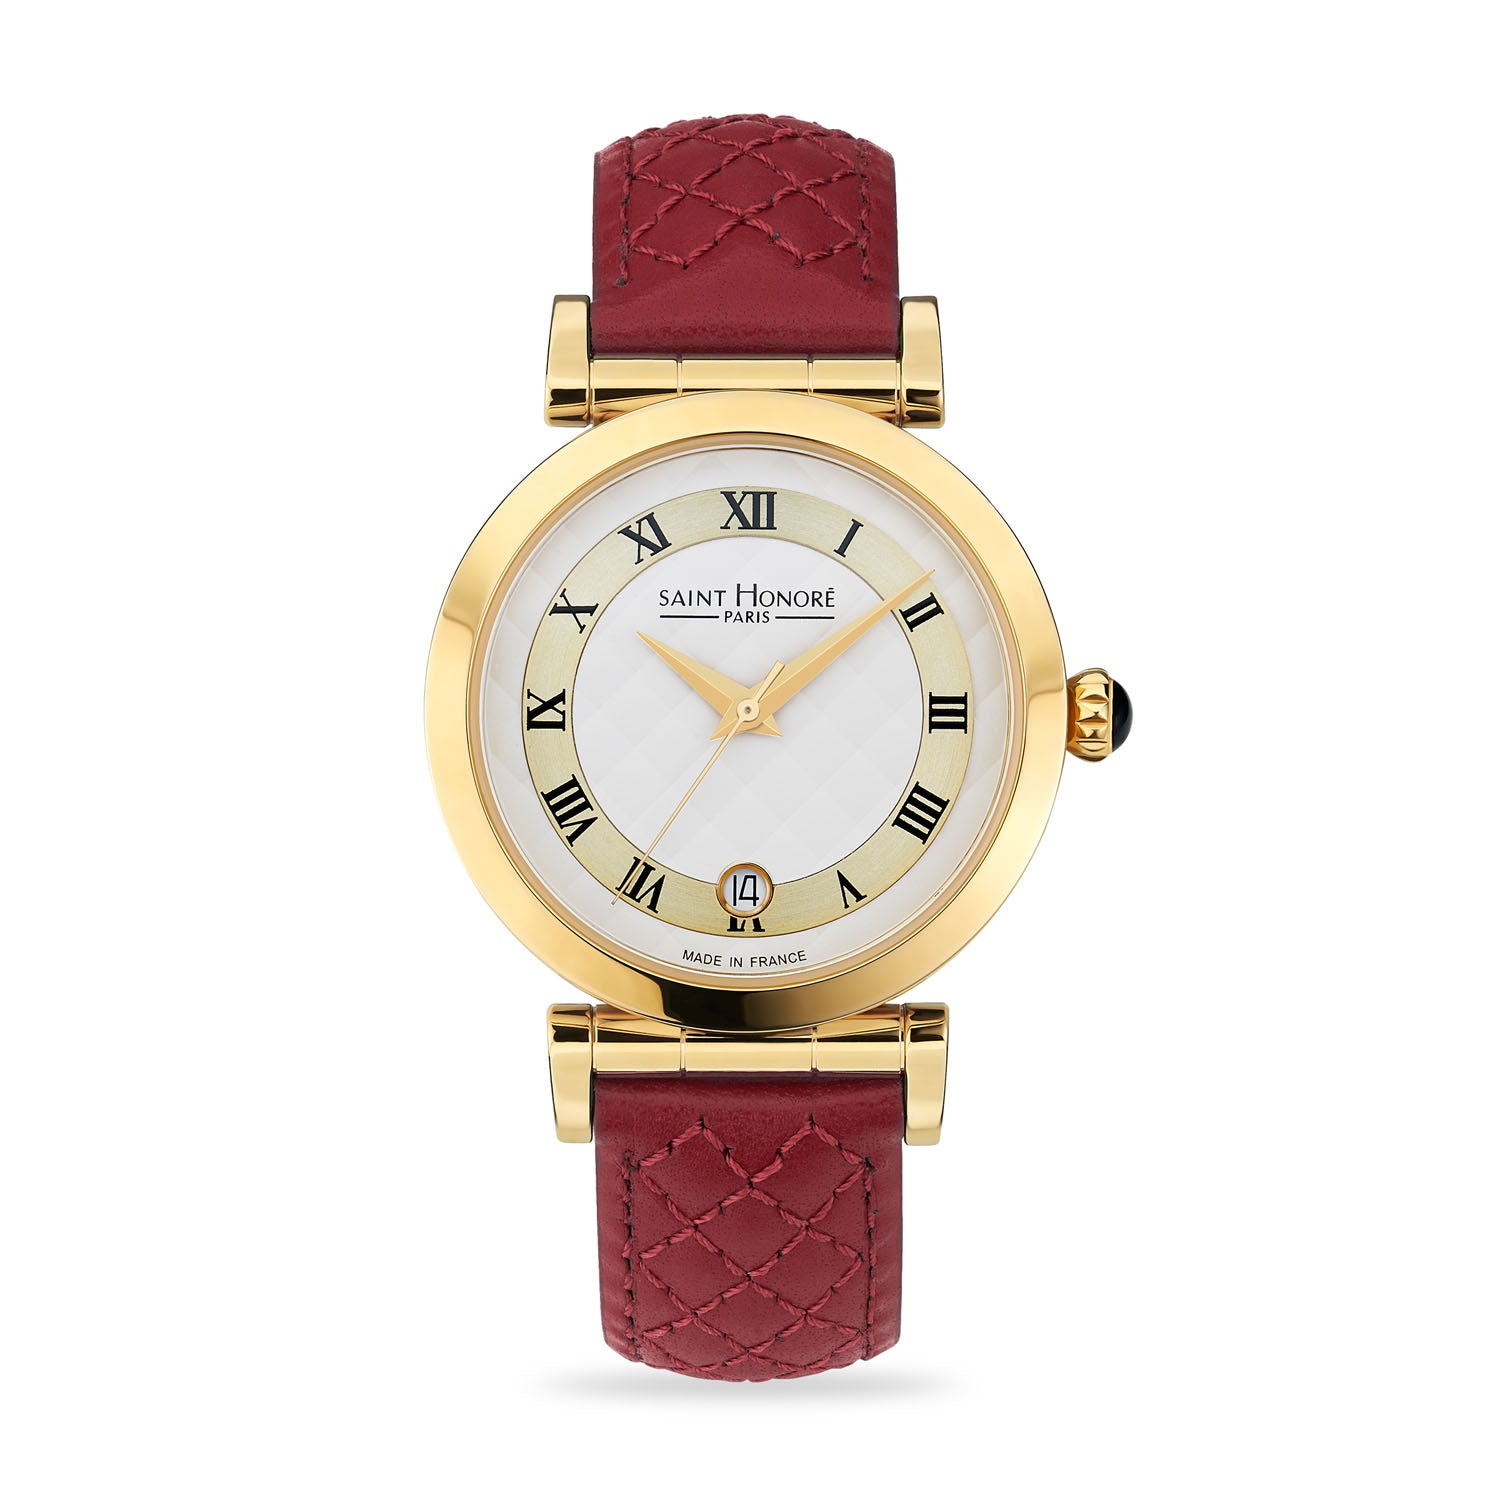 Unique Women's Louis Erard Watches | Chrono24